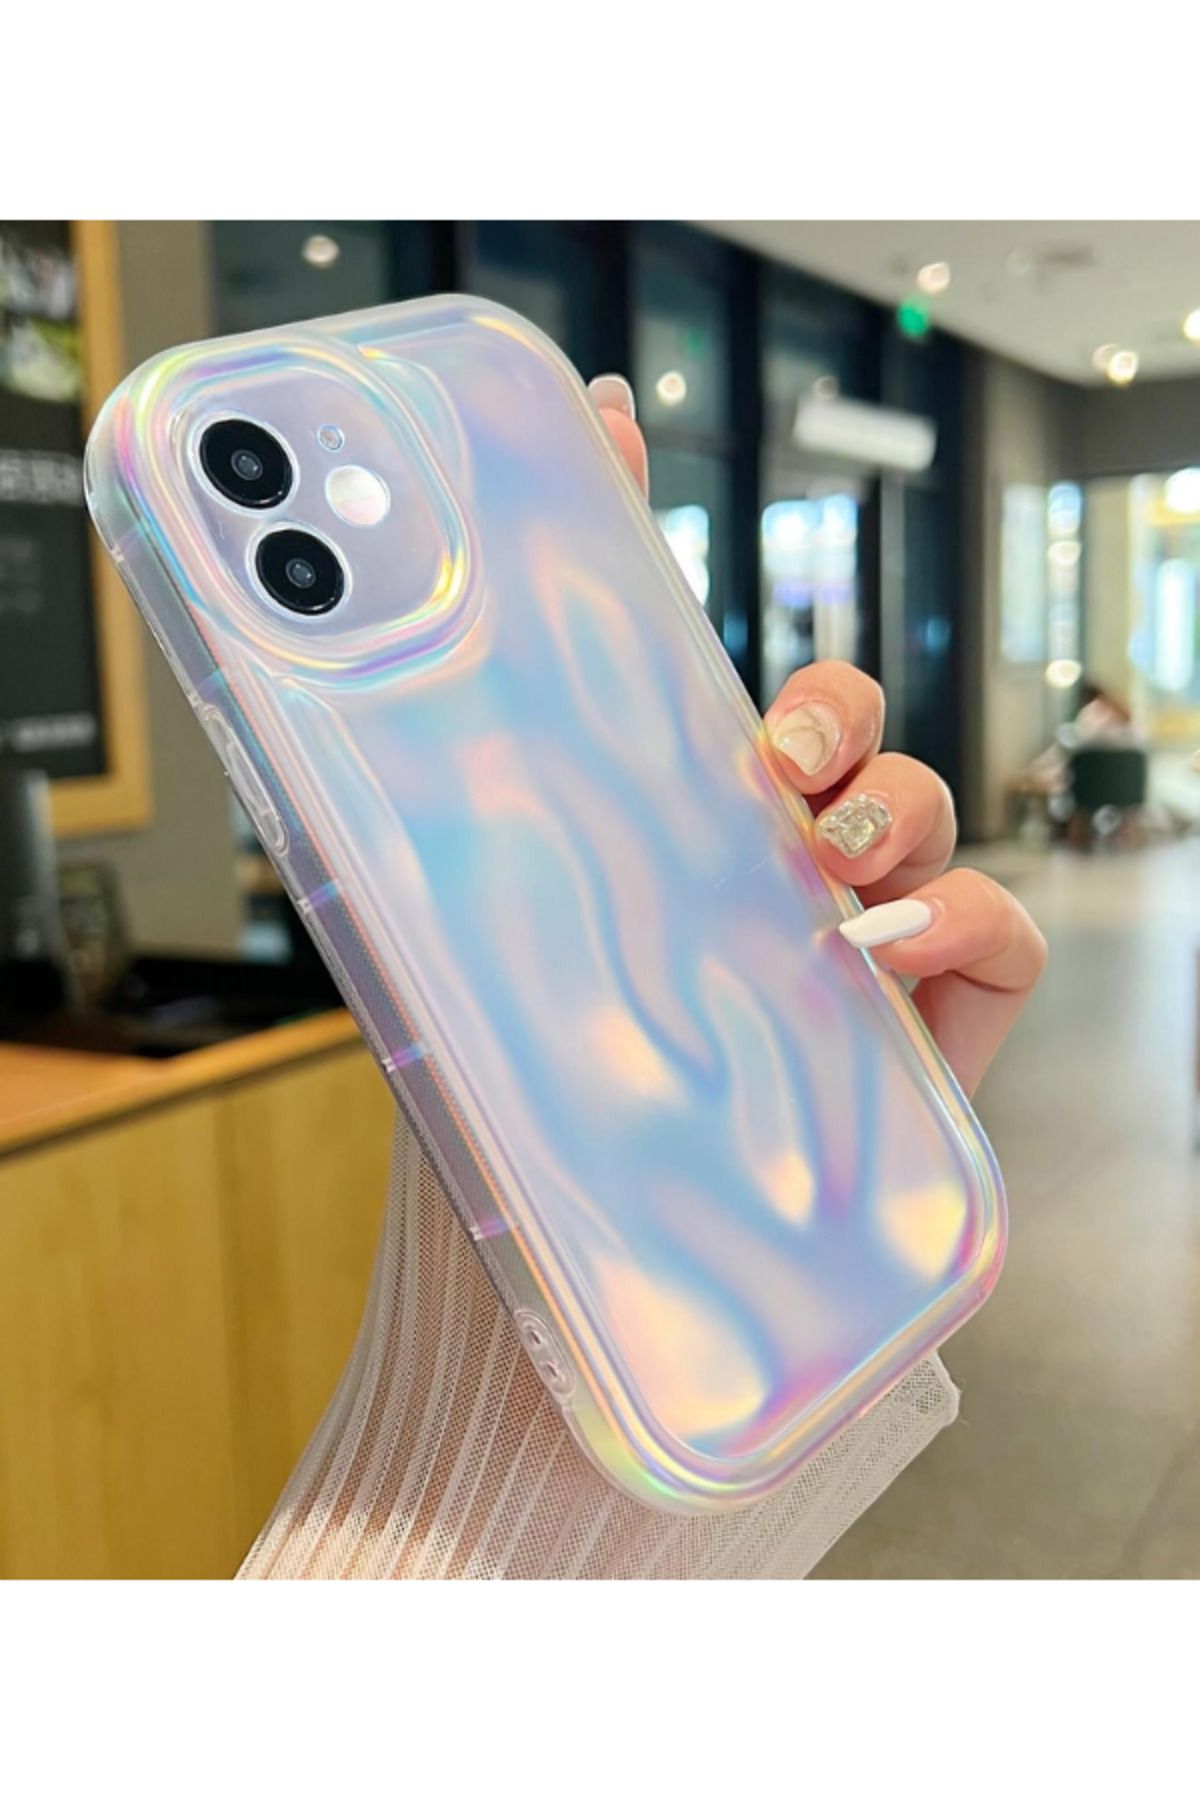 KVK PRİVACY Apple iPhone 11 Kılıf Water Ripple Silikon Parlak Yumuşak Kamera Korumalı Kapak Hologram